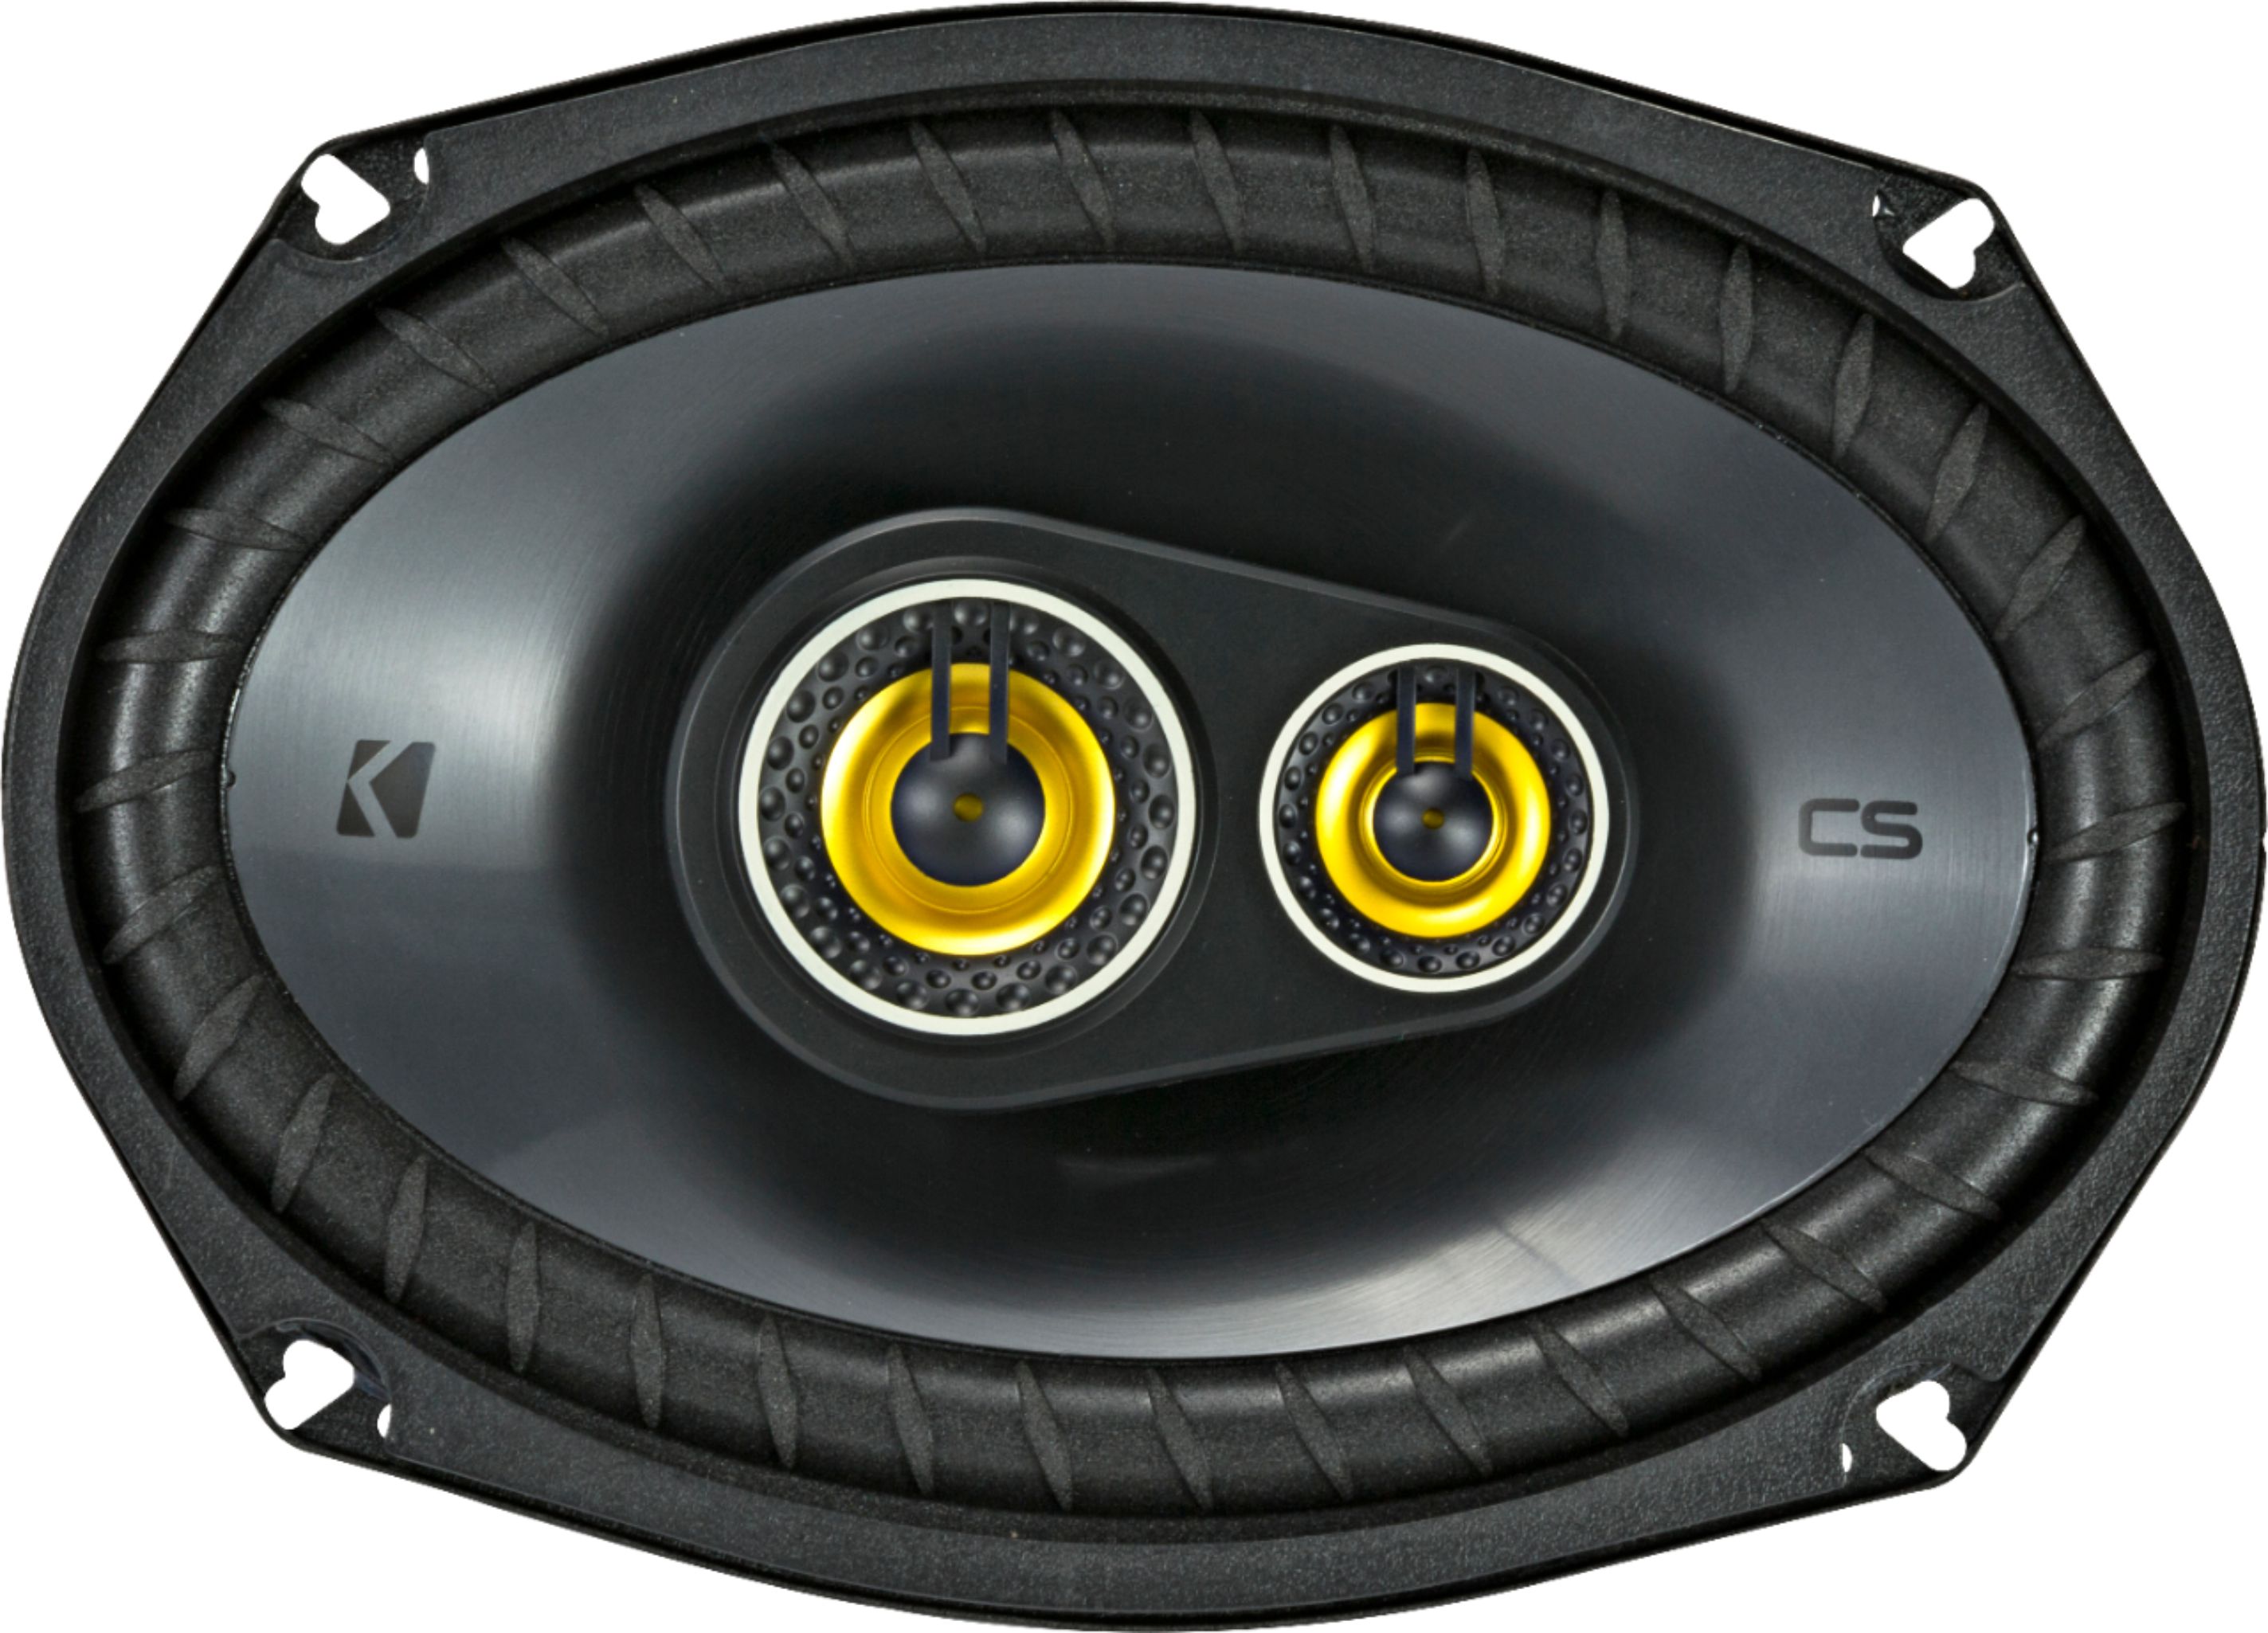 afschaffen marathon Stoffelijk overschot KICKER CS Series 6" x 9" 3-Way Car Speakers with Polypropylene Cones (Pair)  Yellow/Black 46CSC6934 - Best Buy